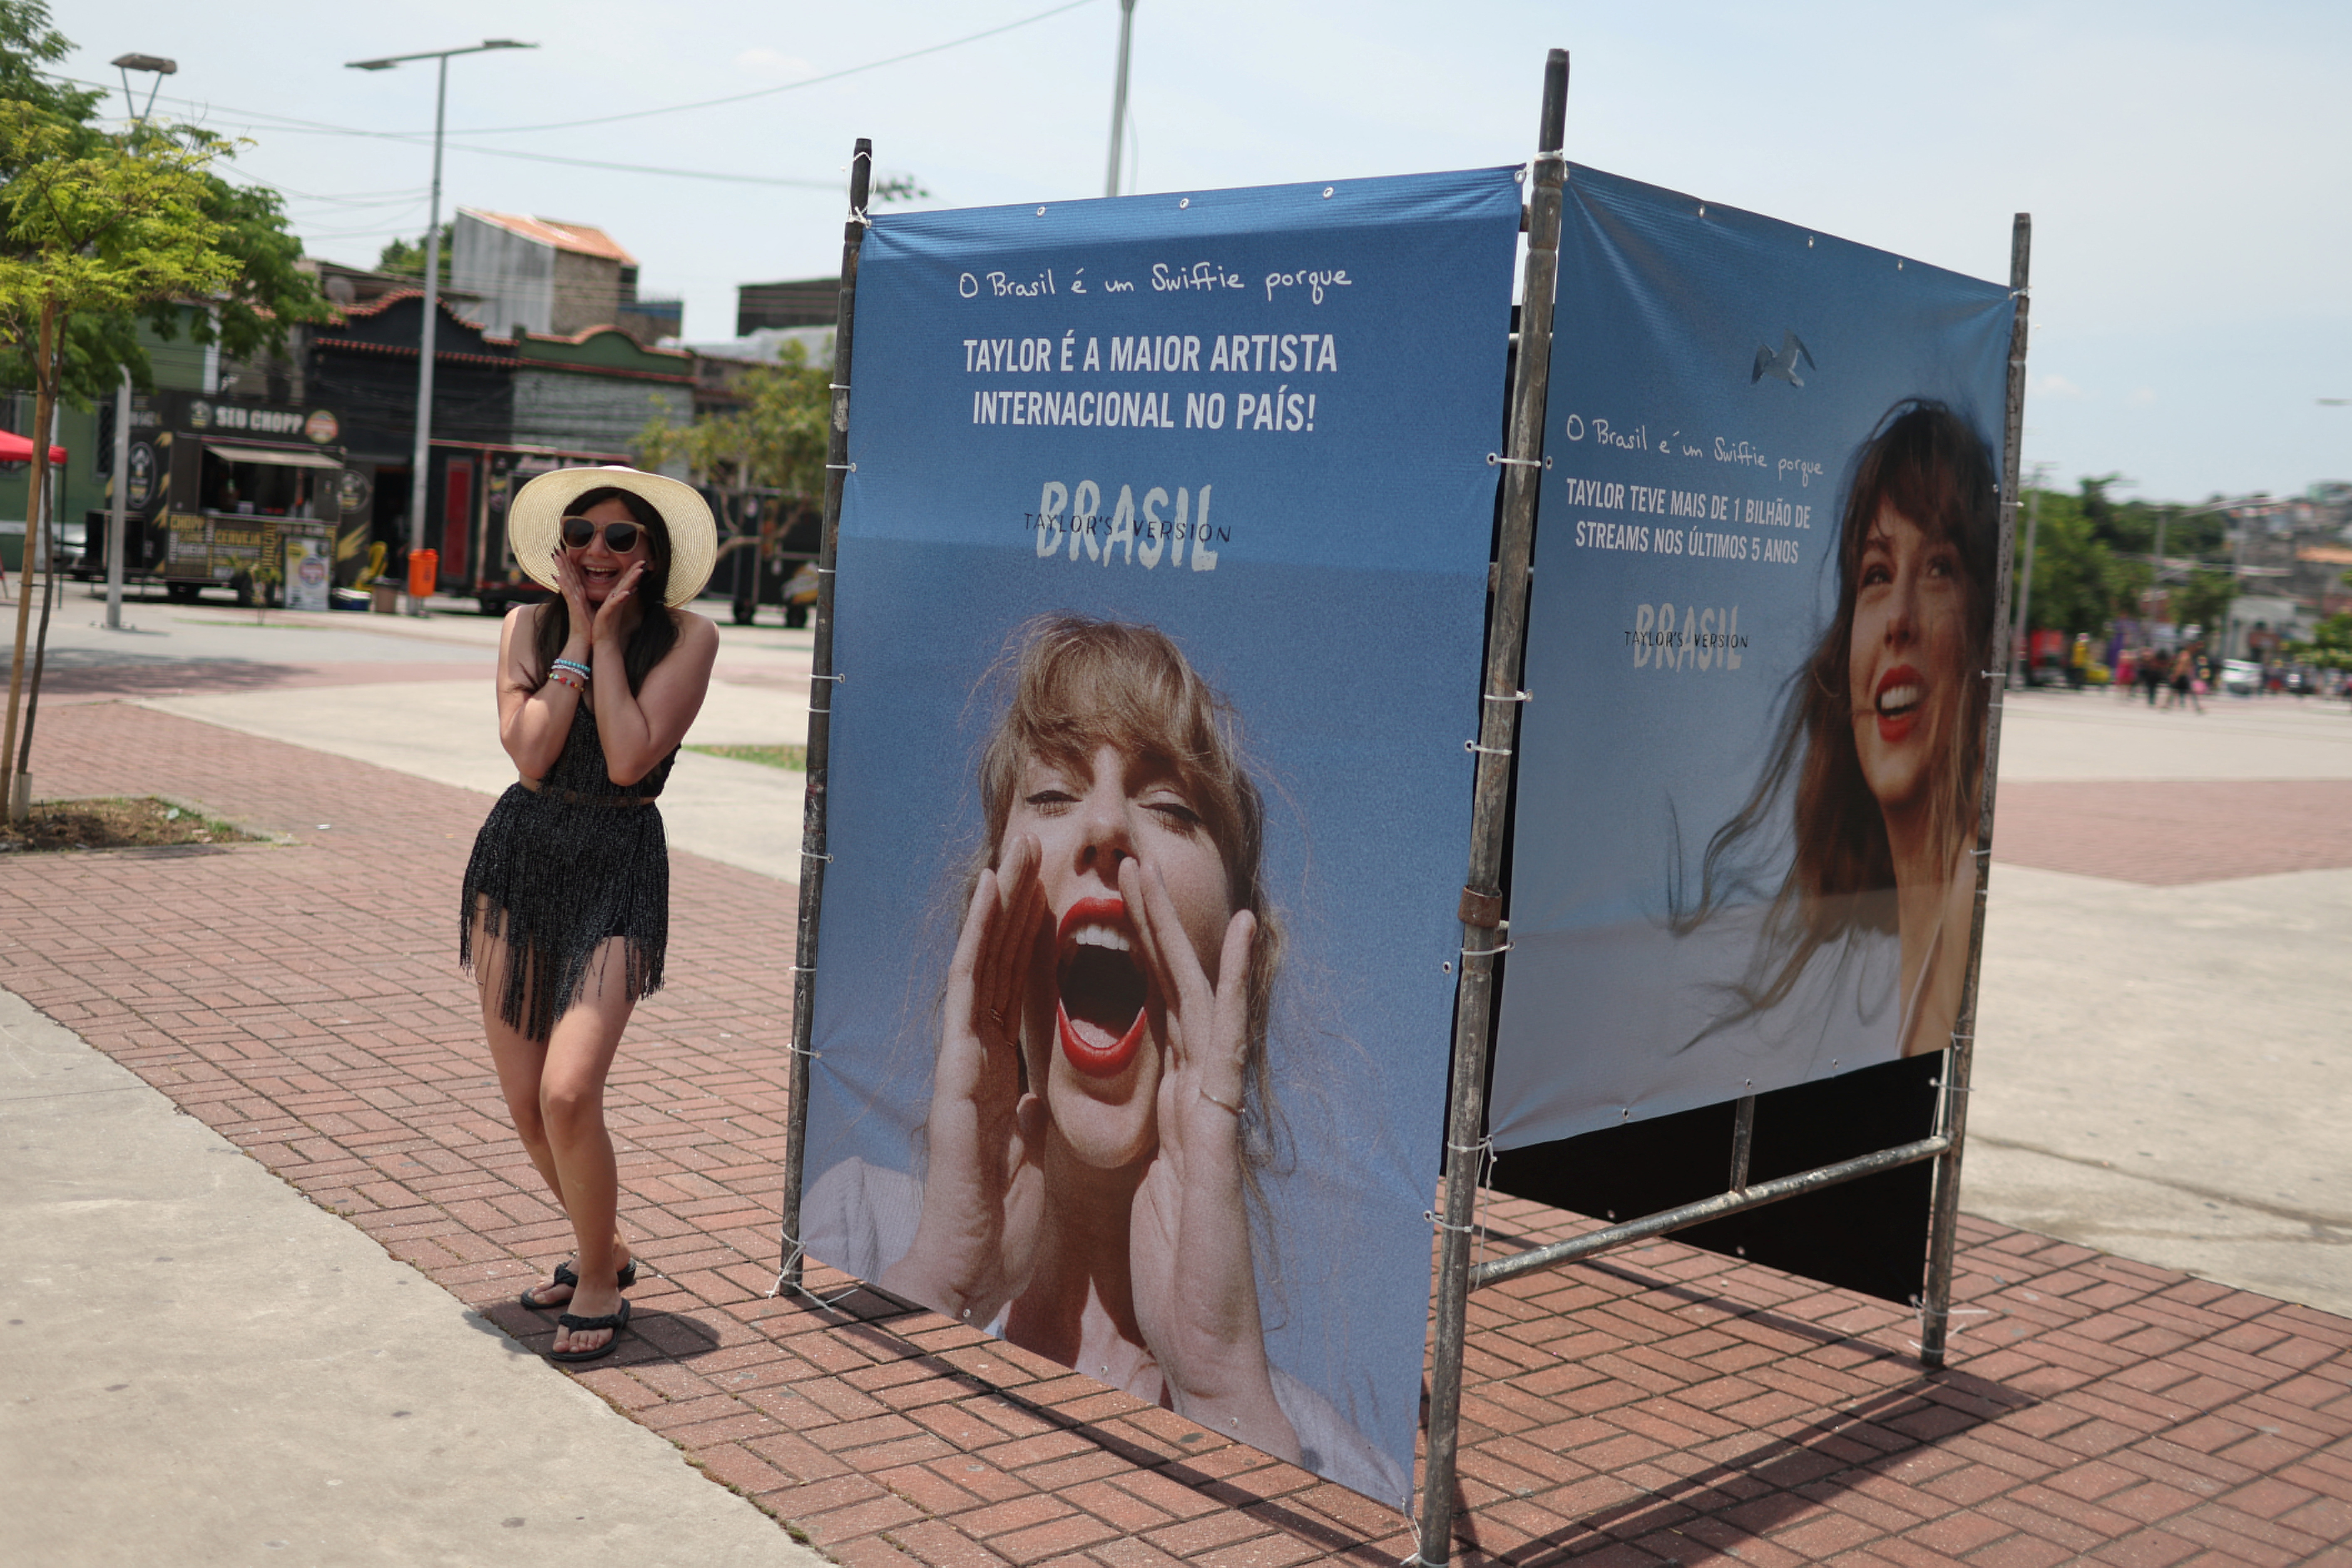 Taylor Swift postpones scorching Rio de Janeiro show after fan's death